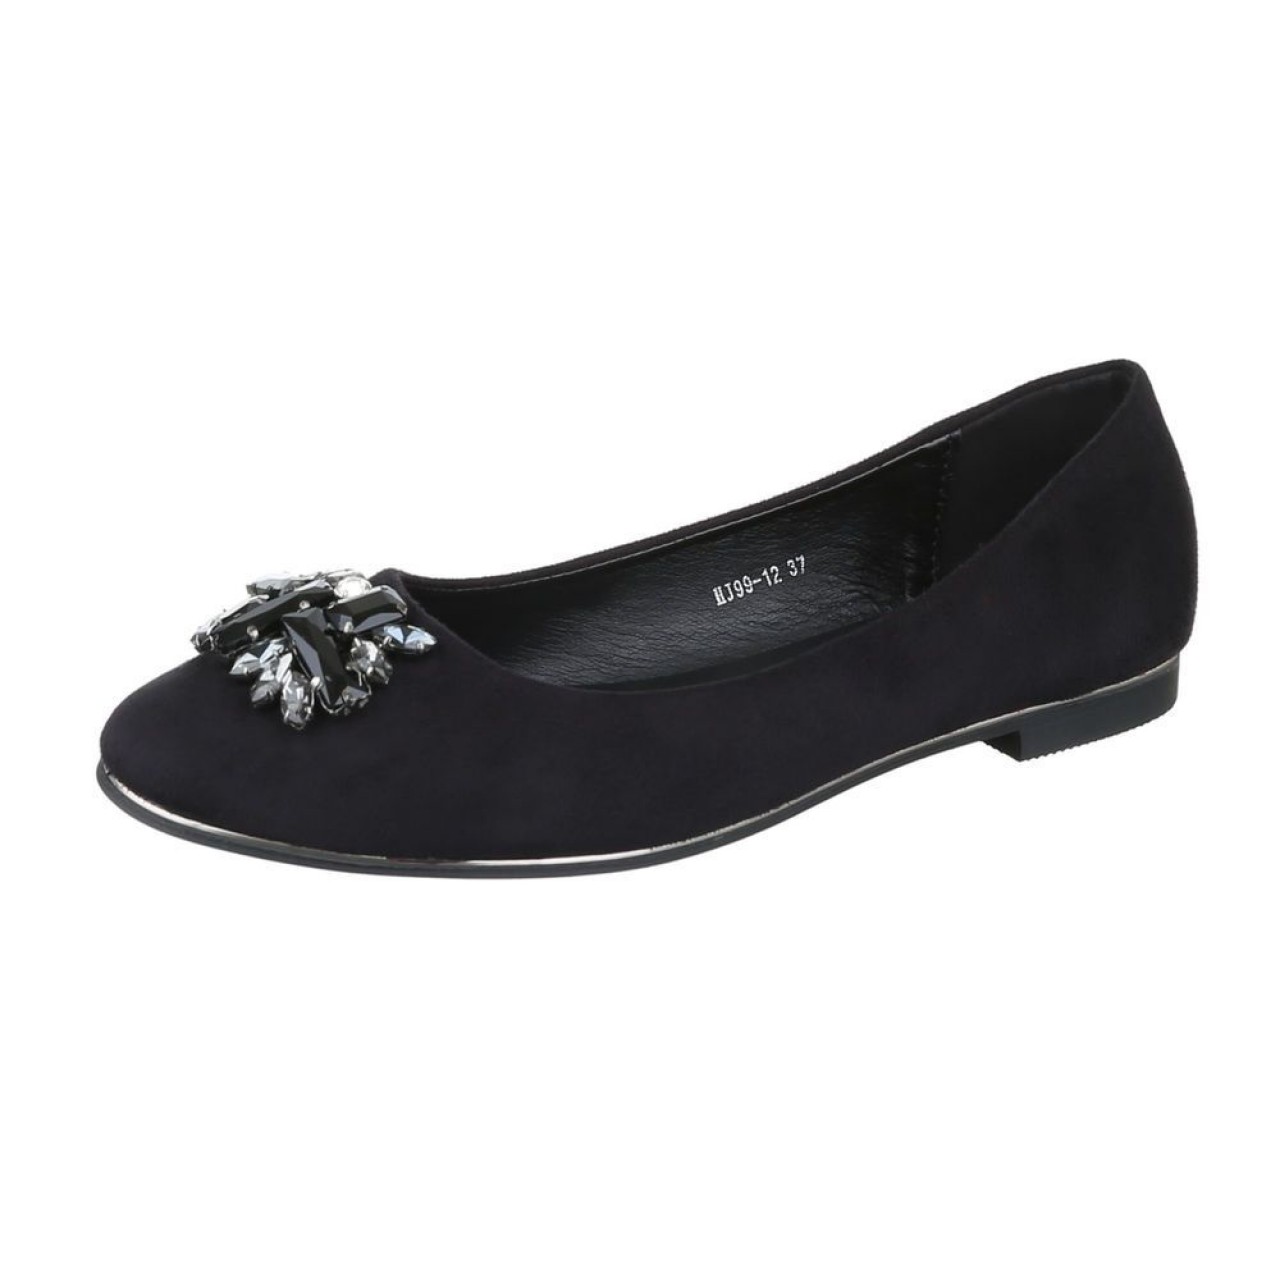 Γυναικεία Παπούτσια Μπαλαρίνα - Μαύρο - 4050